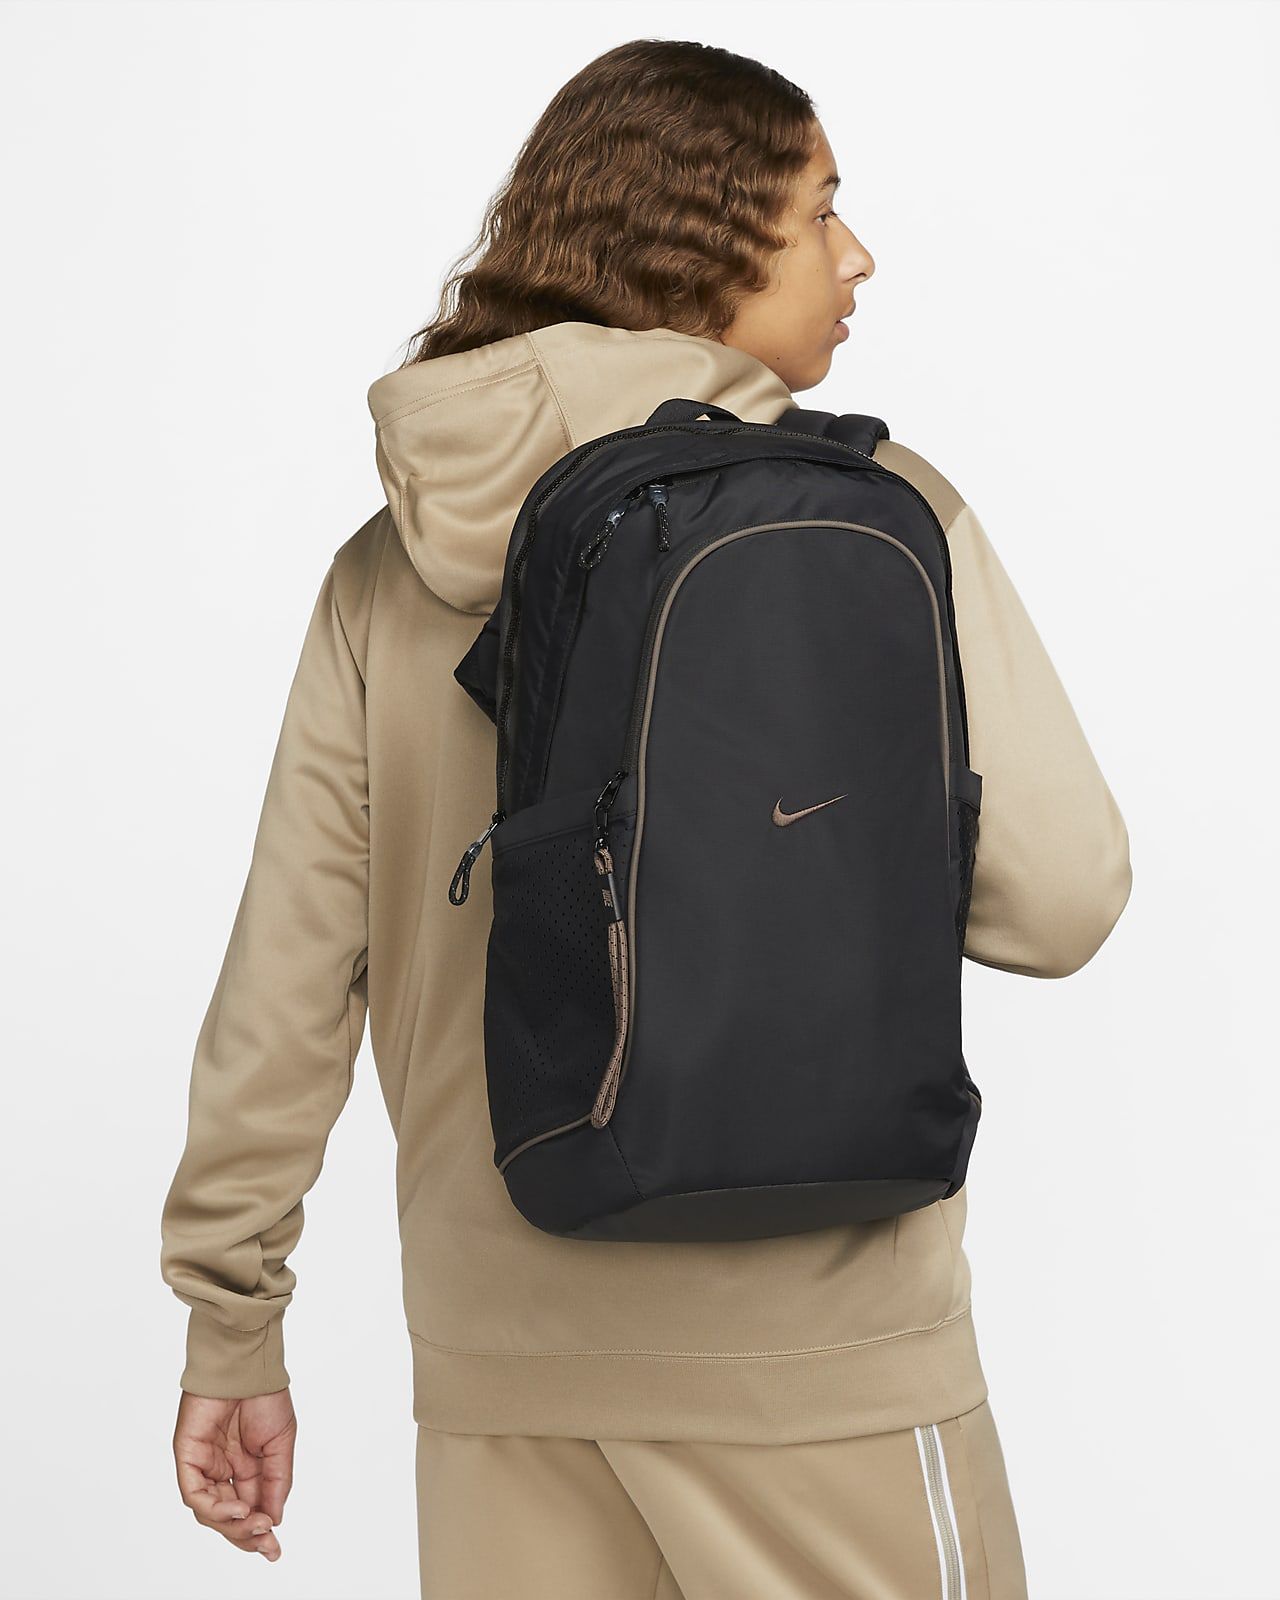 Backpack (20L) | Nike (US)